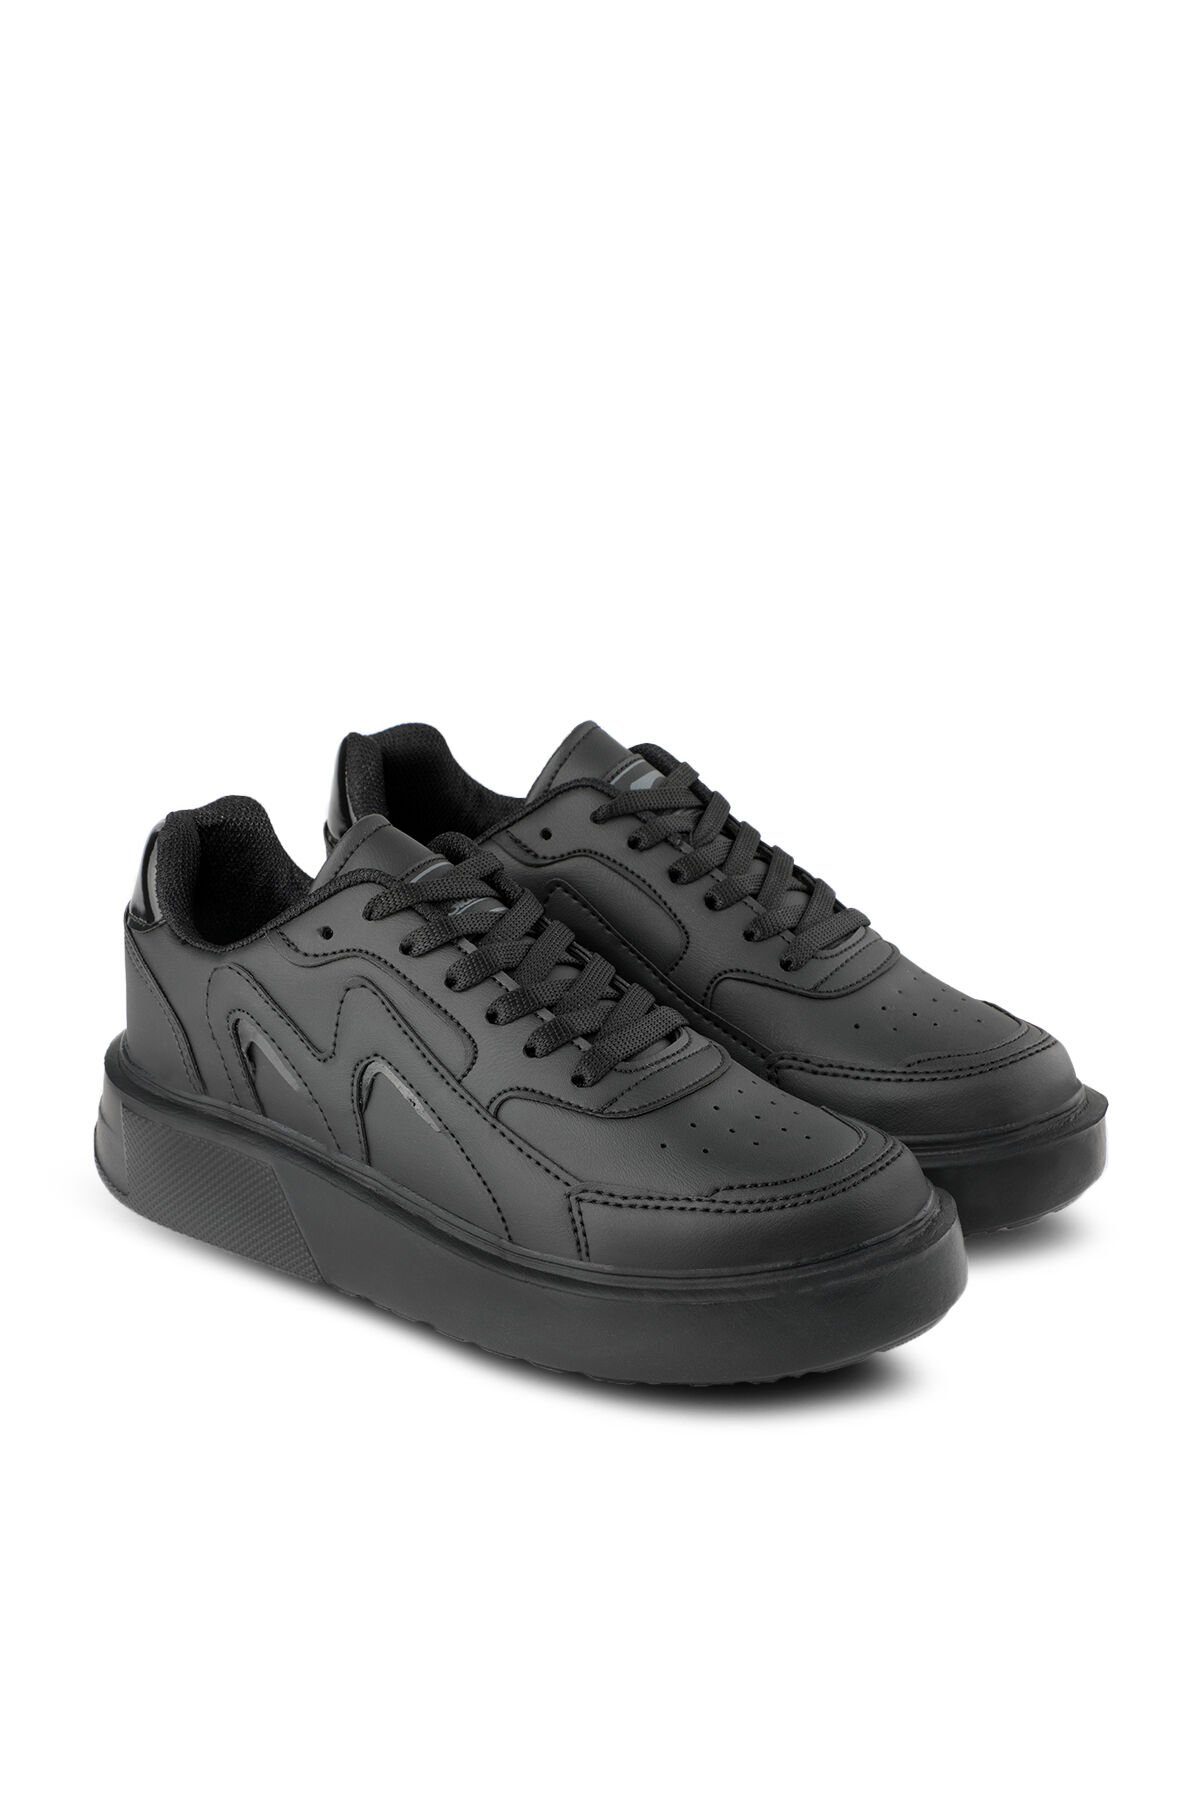 Slazenger ZENIA Sneaker Kadın Ayakkabı Siyah / Siyah - Thumbnail